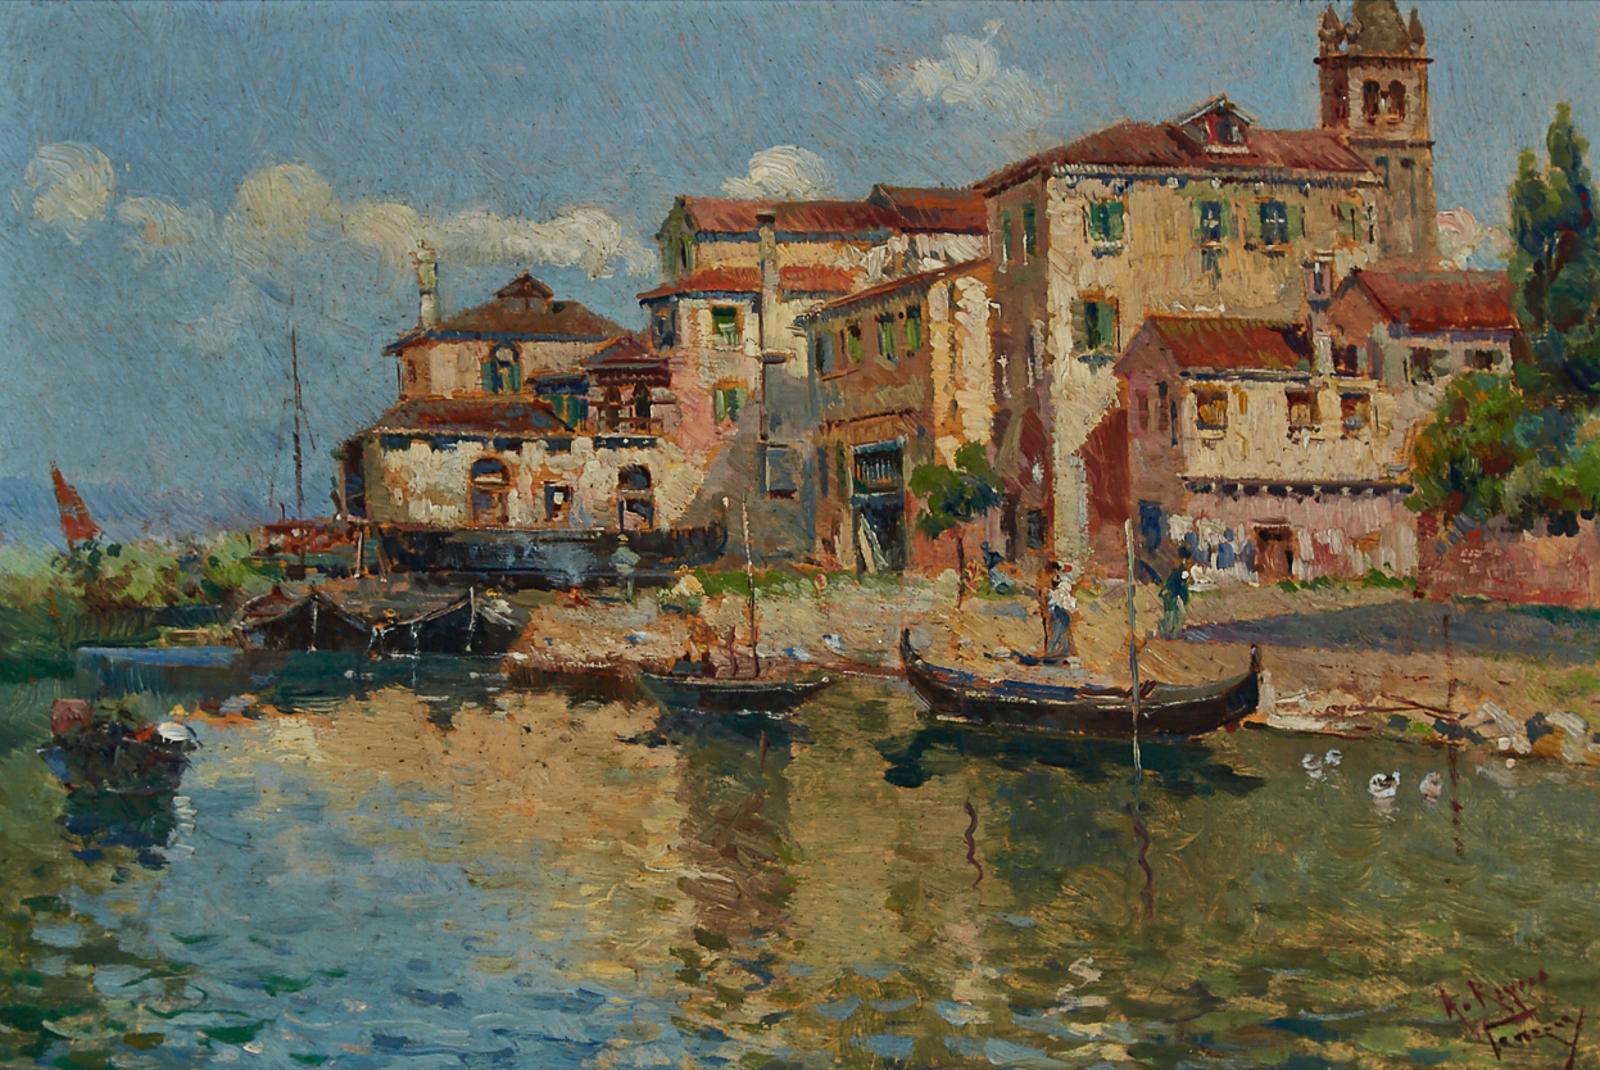 Antonio María de Reyna Manescau (1859-1937) - A Venetian Waterfront